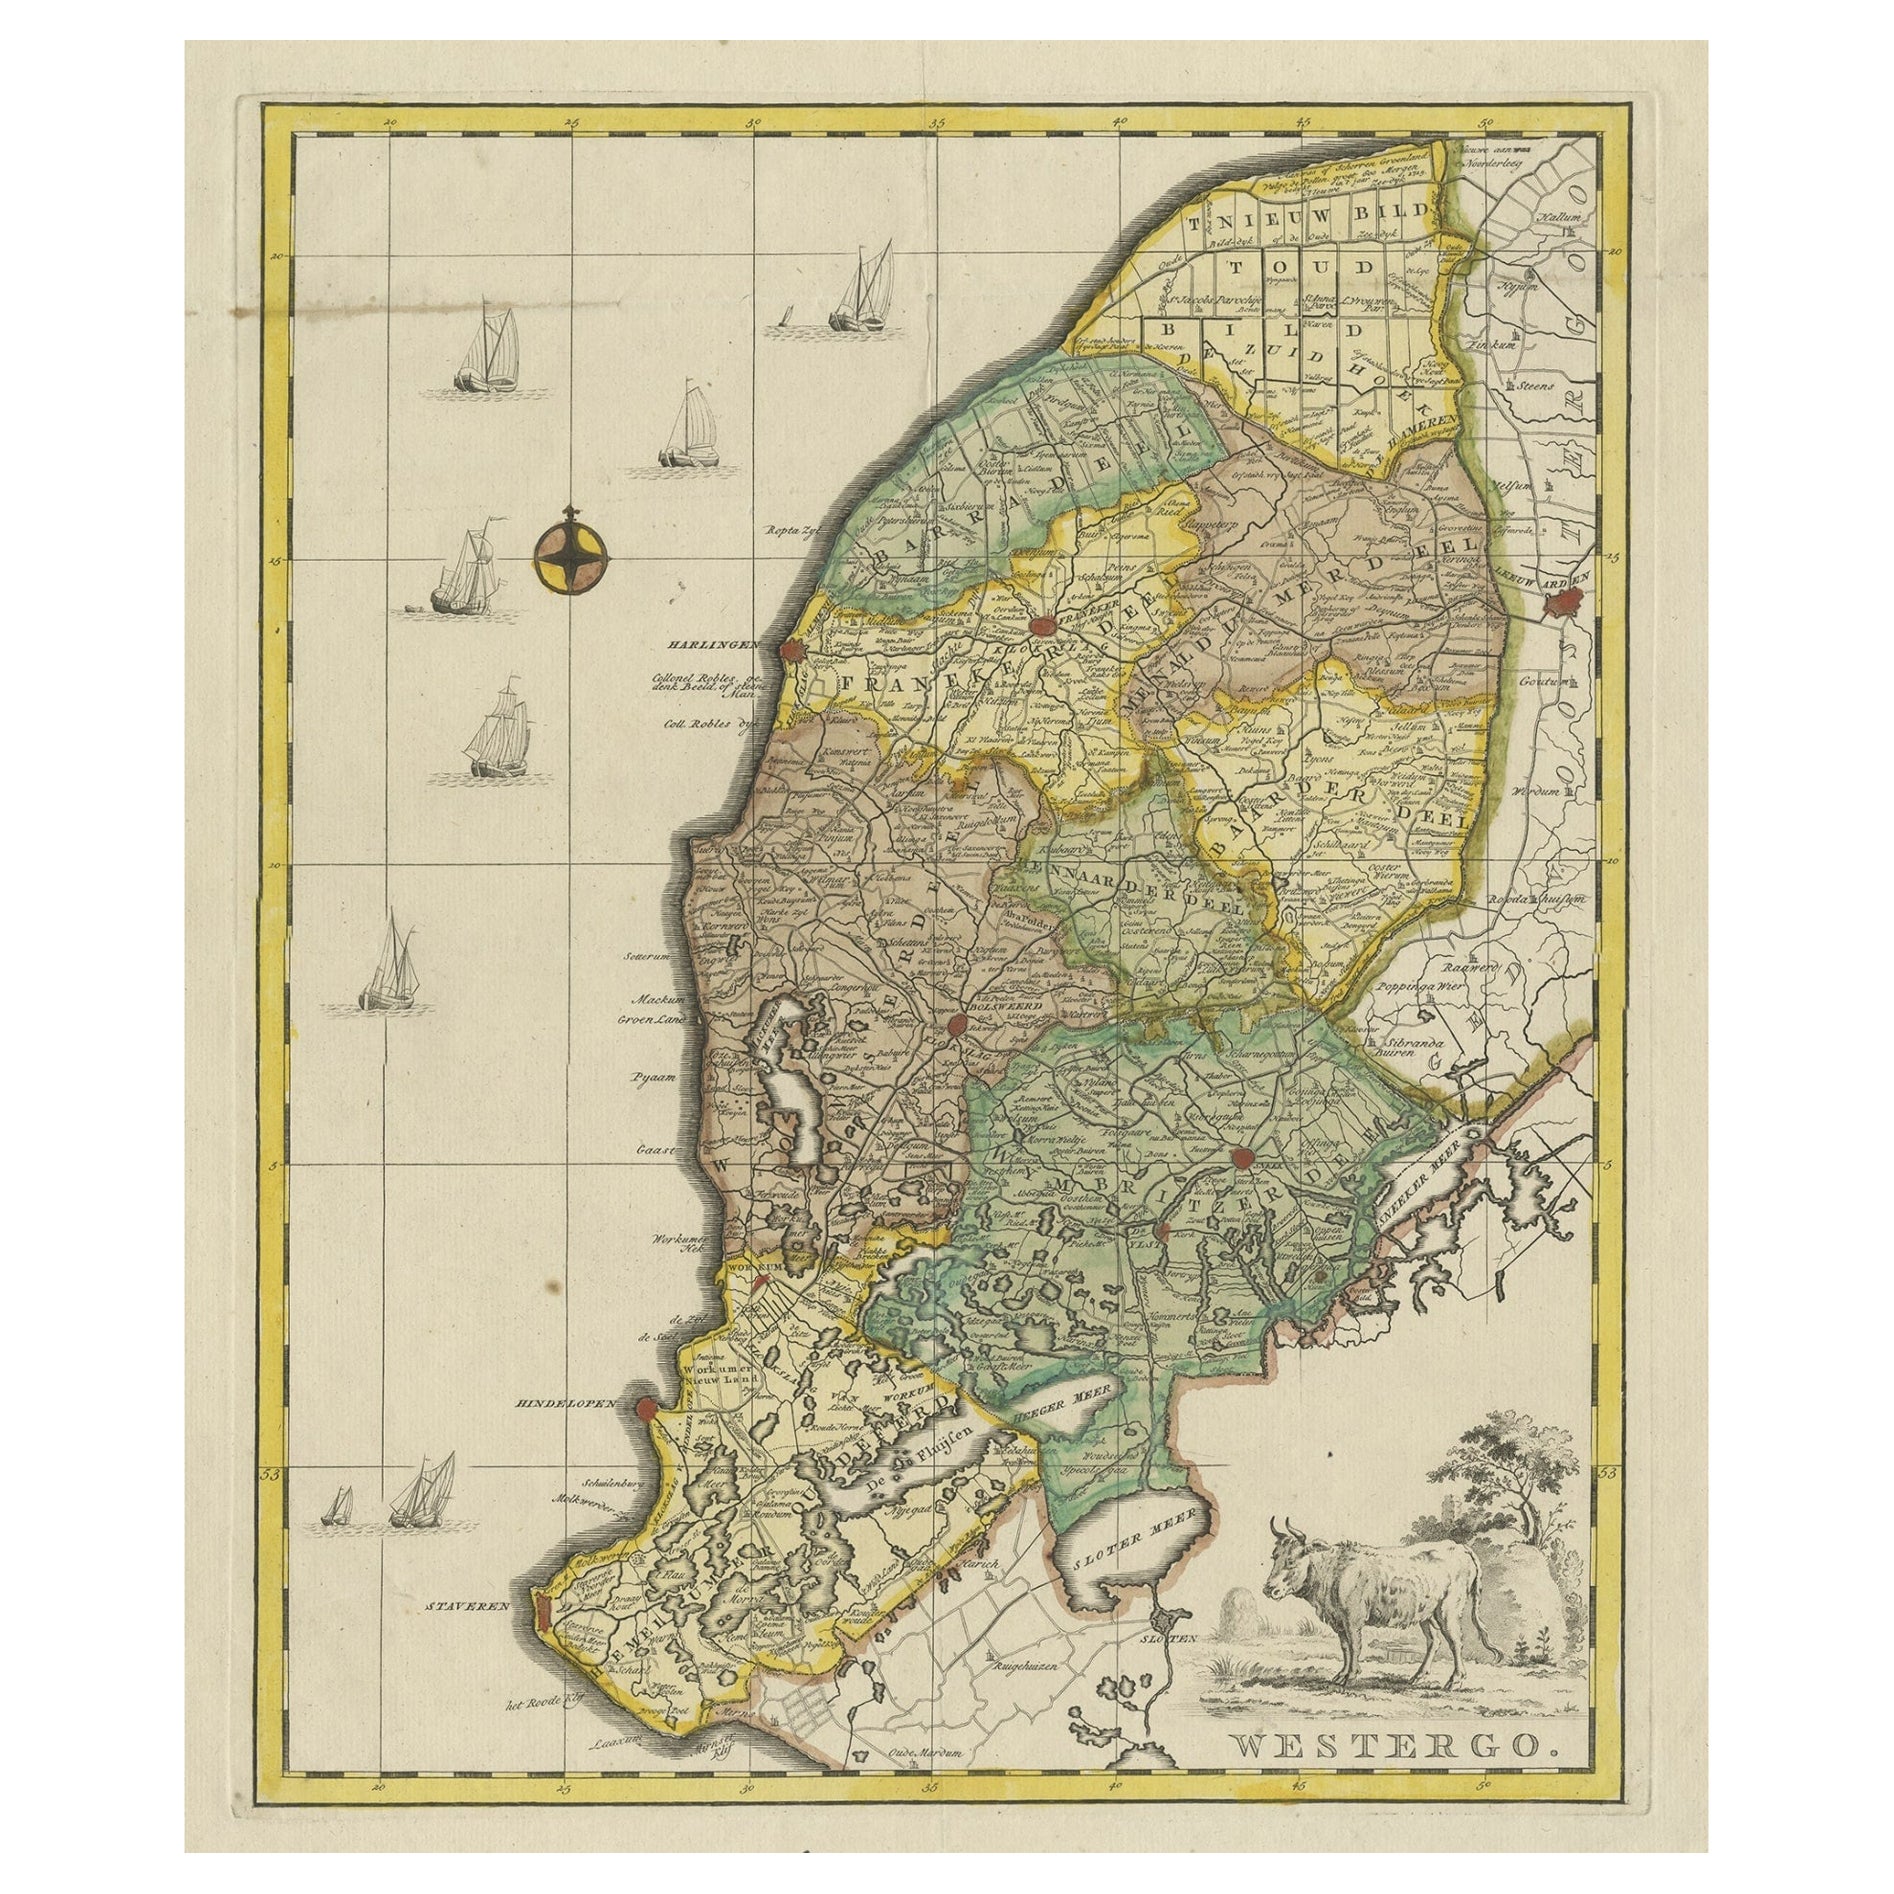 Kupferstich von Westergo, Teil von Friesland, Niederlande, 1744